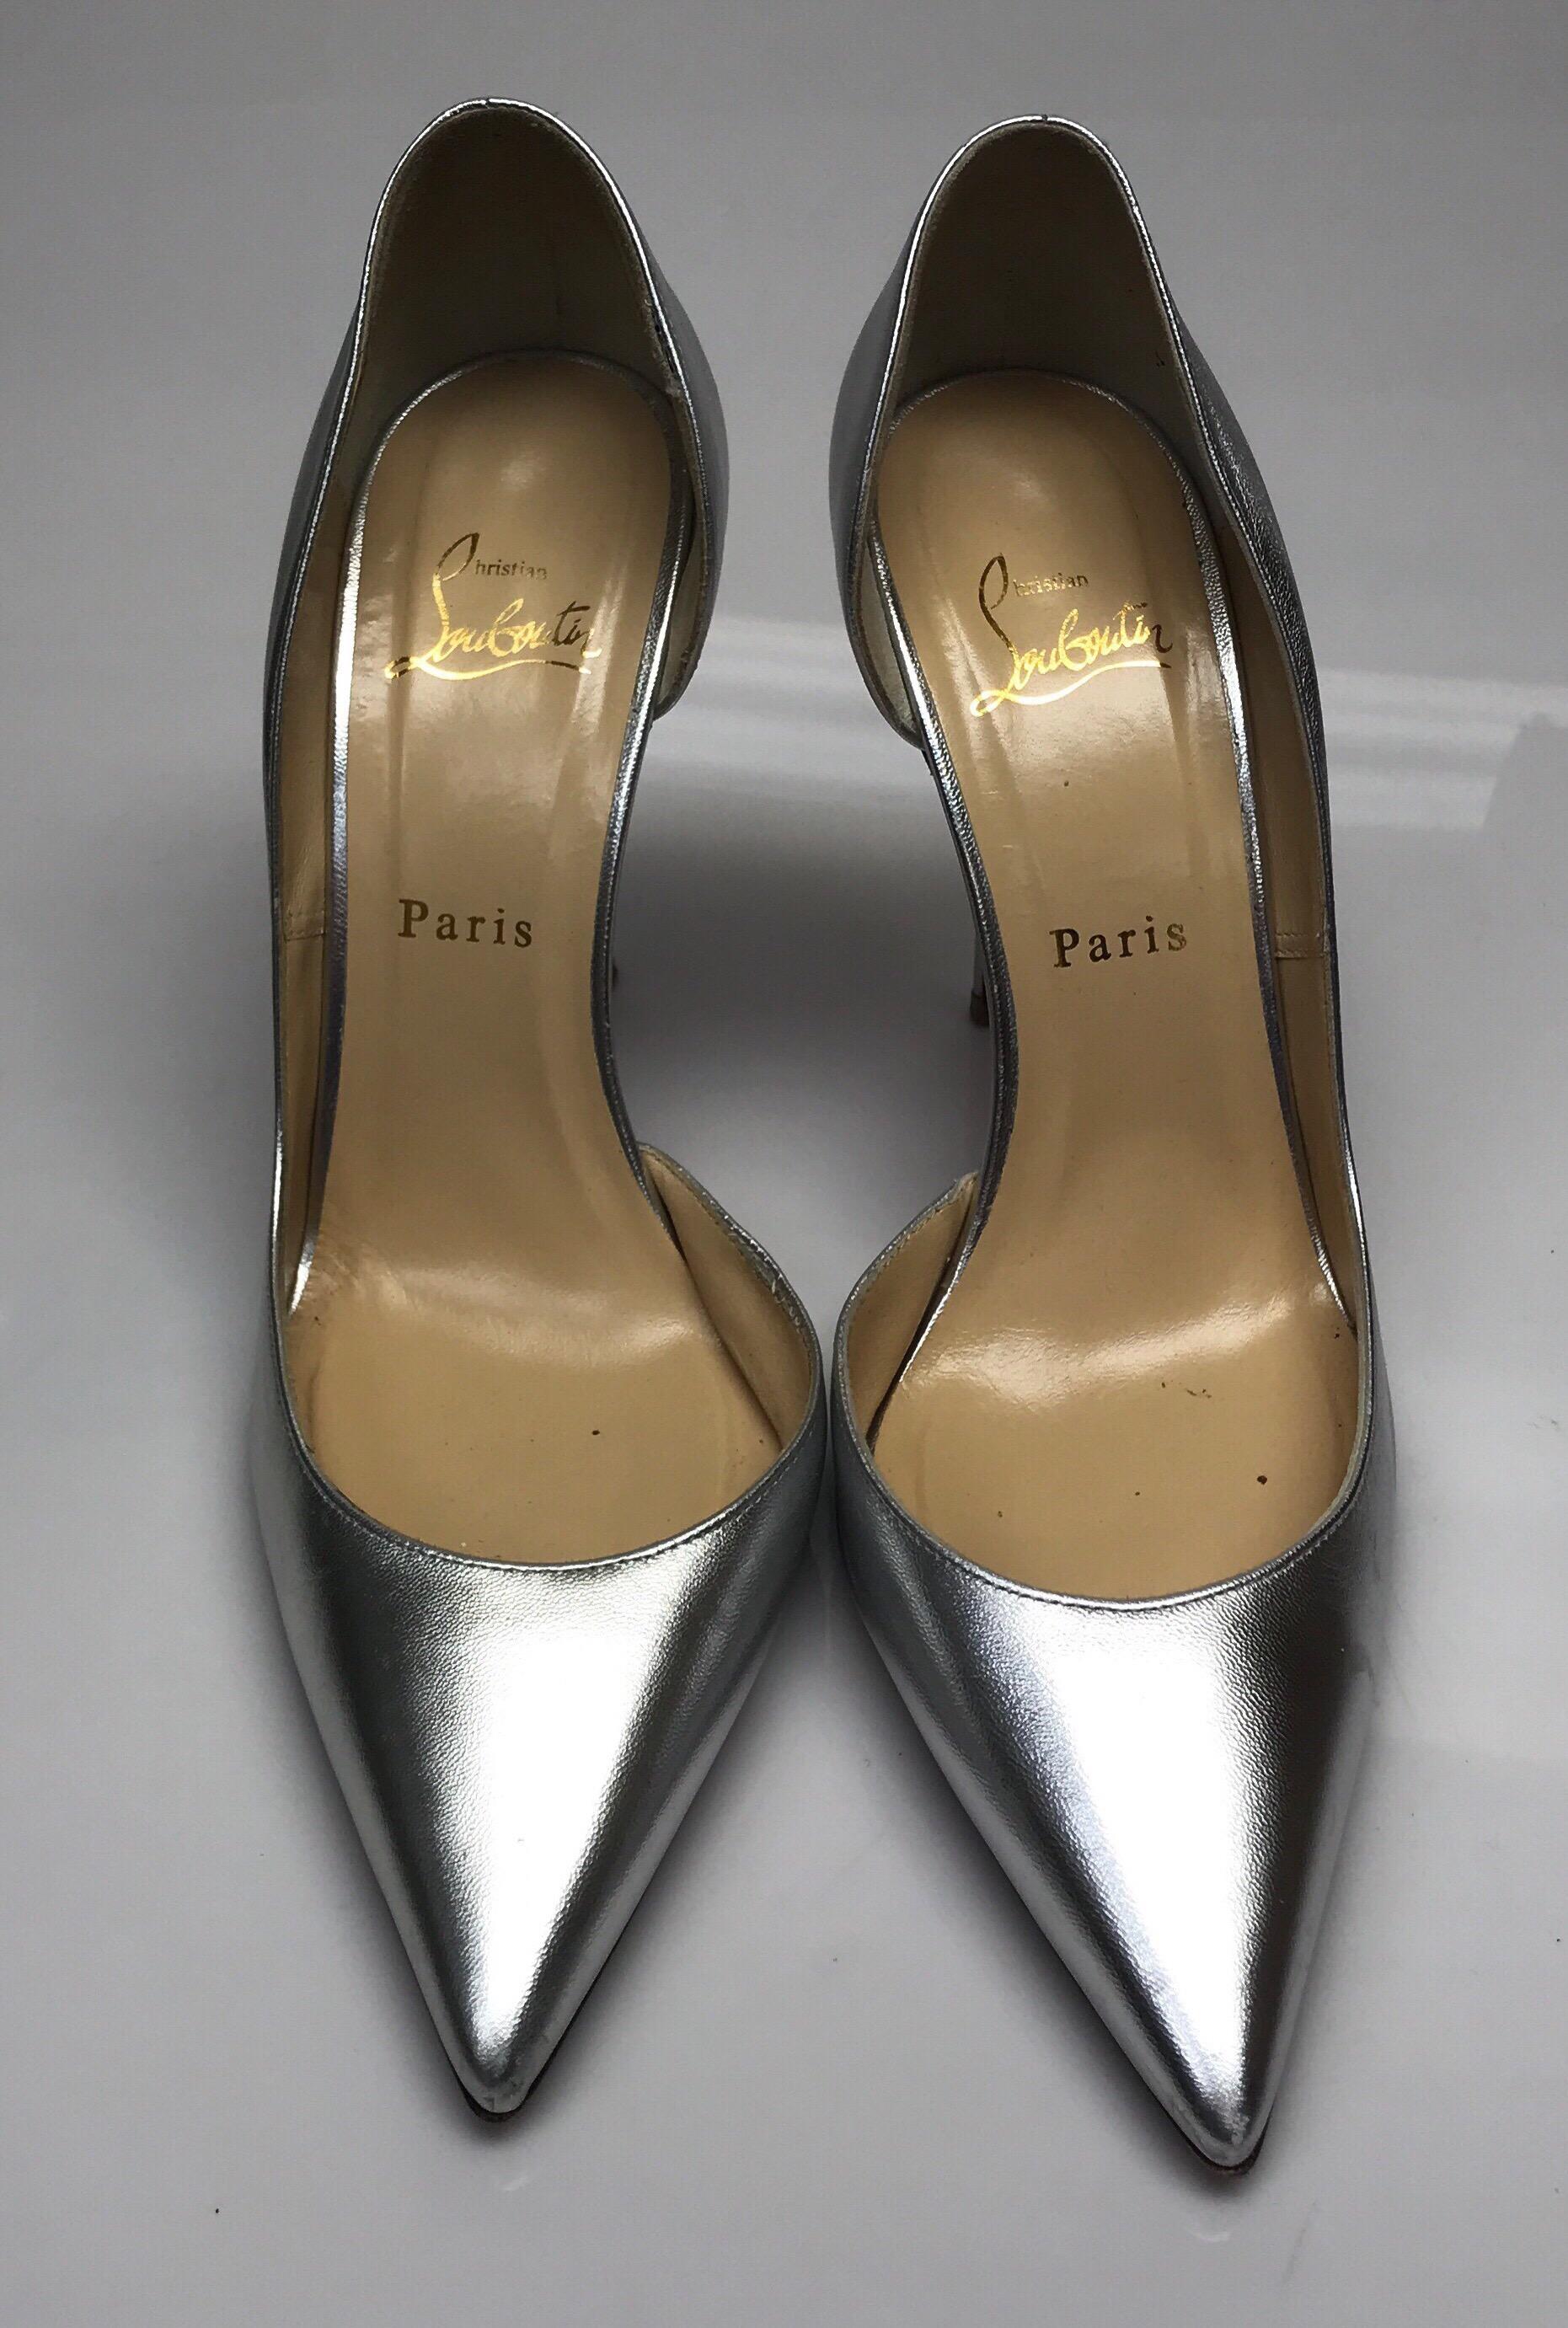 CHRISTIAN LOUBOUTIN Silber D'orsay Schuhe-39,5. Diese erstaunlichen Christian Louboutin Fersen sind in gutem Zustand. Sie weisen Abnutzungserscheinungen auf, die dem Gebrauch entsprechen. Die roten Böden sind leicht abgerieben und das Leder hat sehr